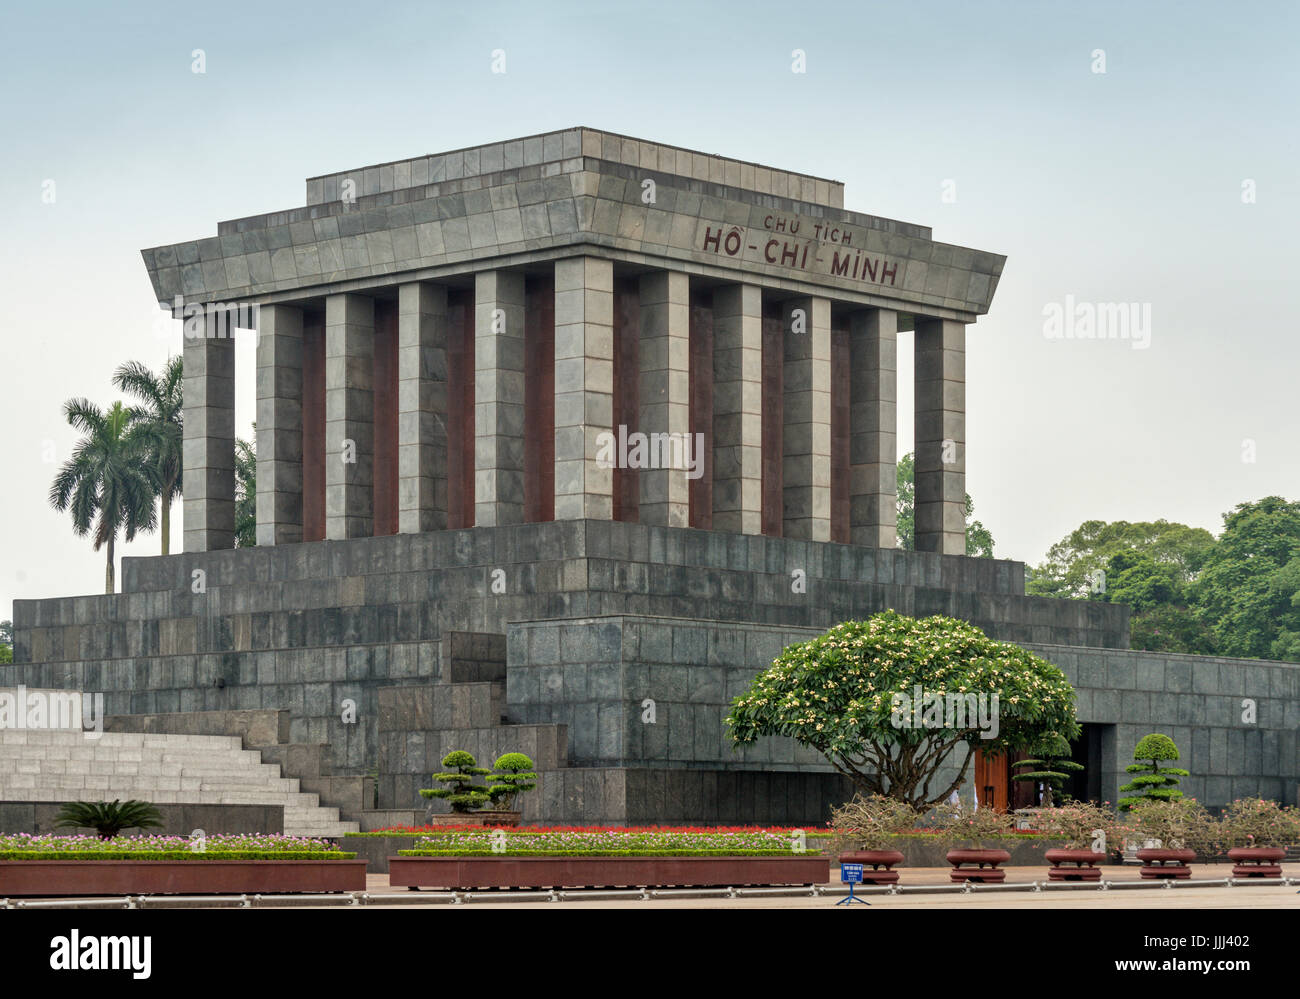 Le mausolée de Ho Chi Minh Vietnam Hanoi Banque D'Images